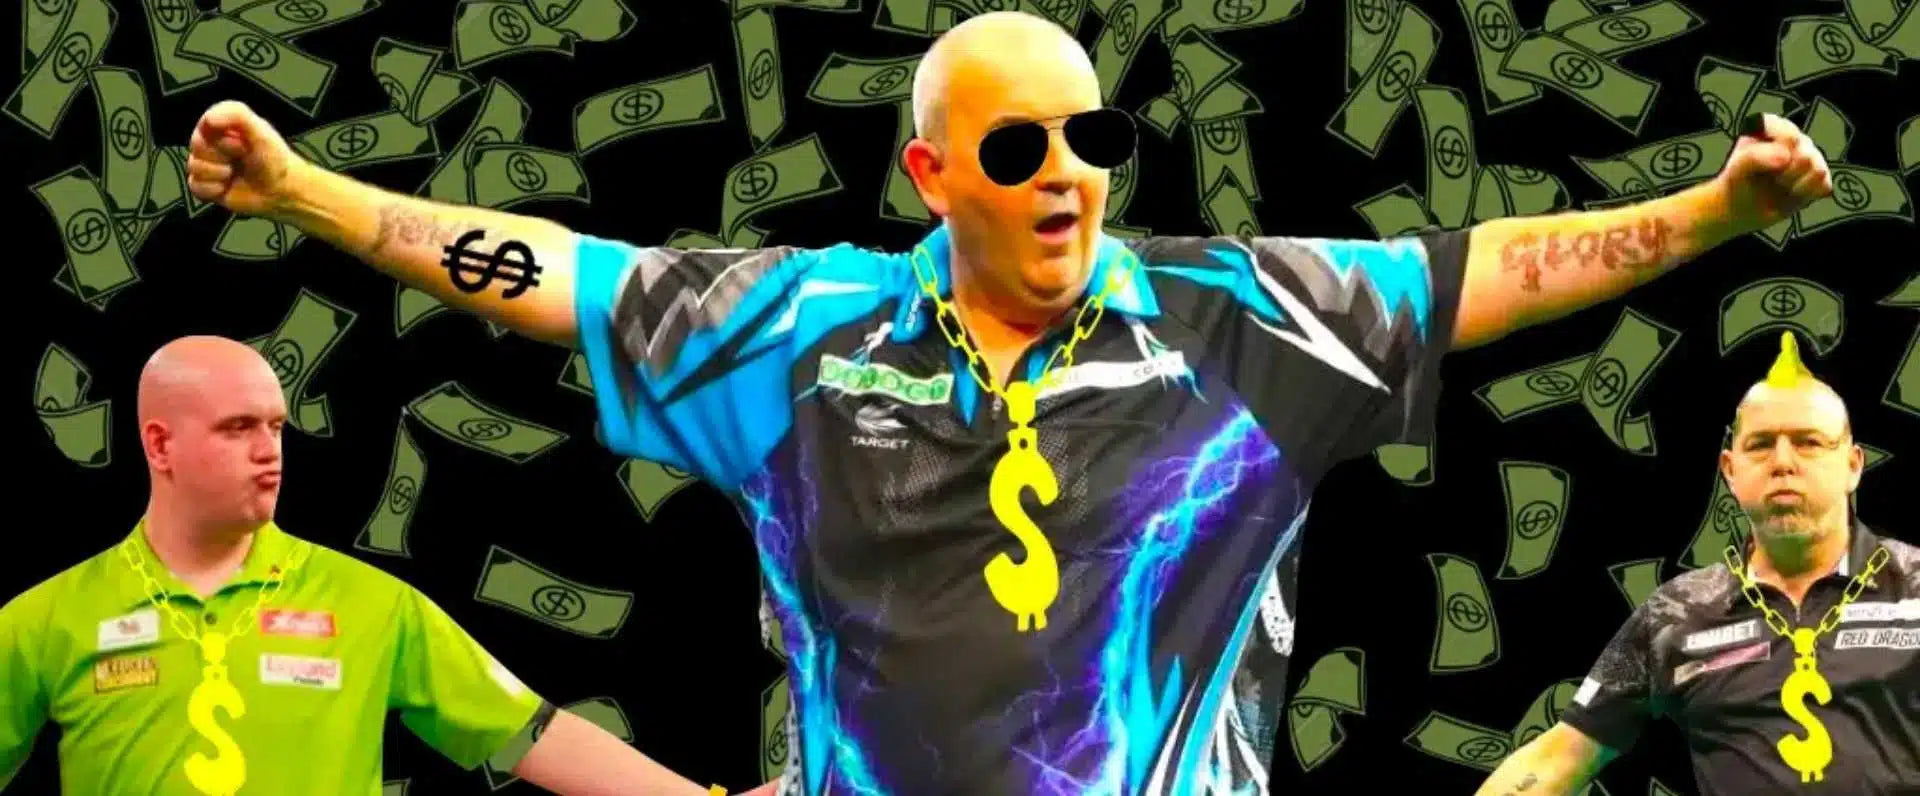 Dartspieler Vermögen: So viel verdienen die reichsten Dart Profis